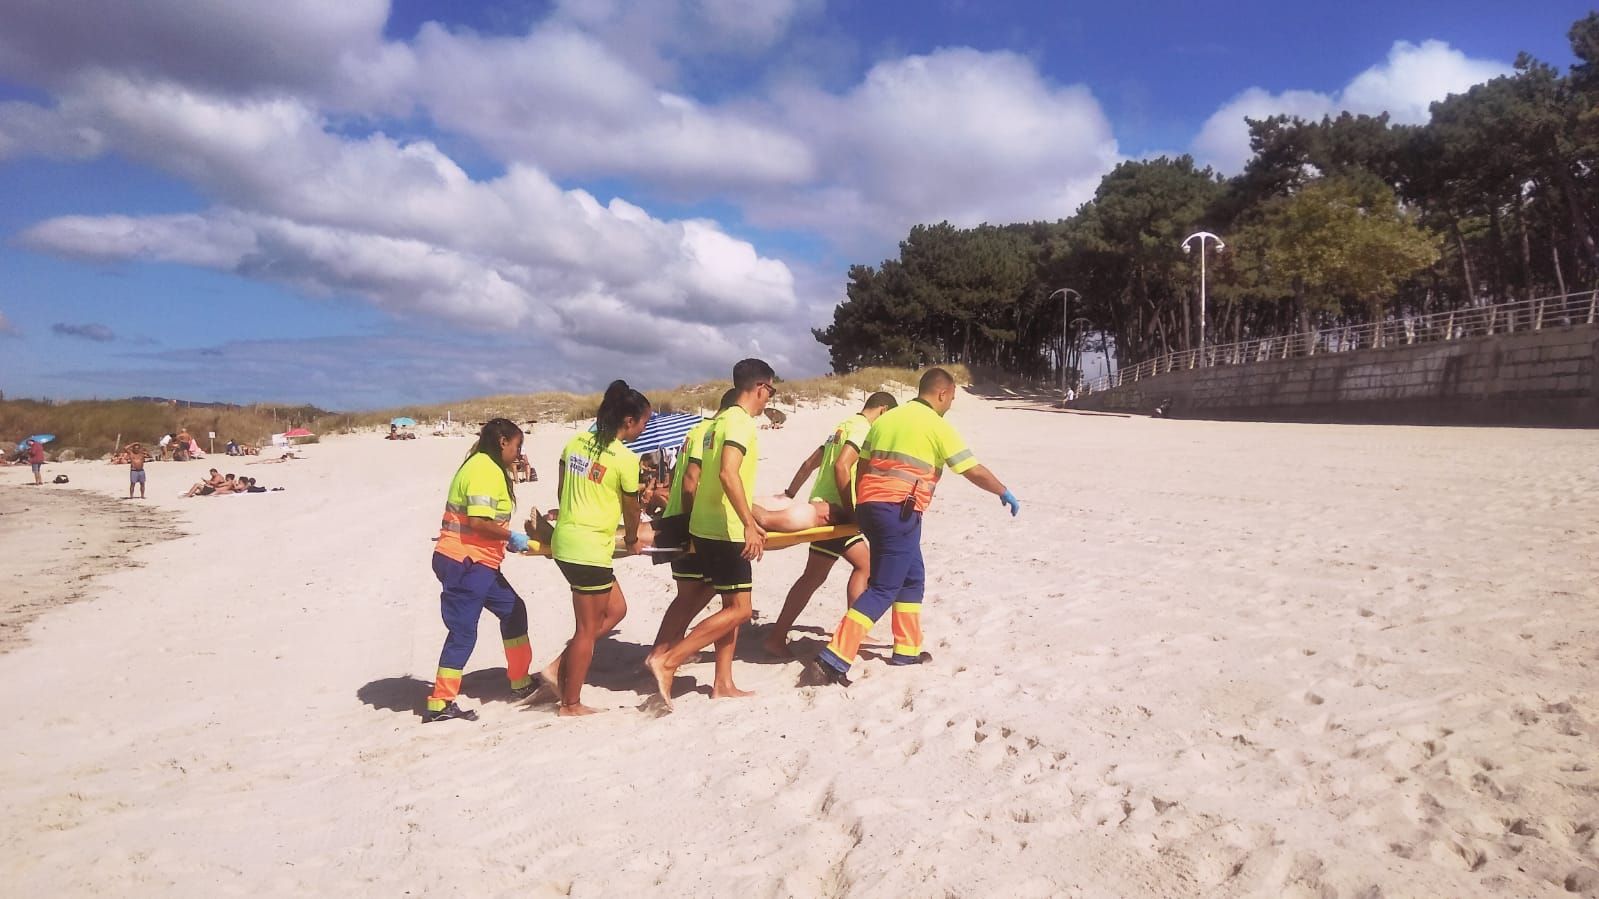 Los vigilantes de la playa: sobresaliente en seguridad